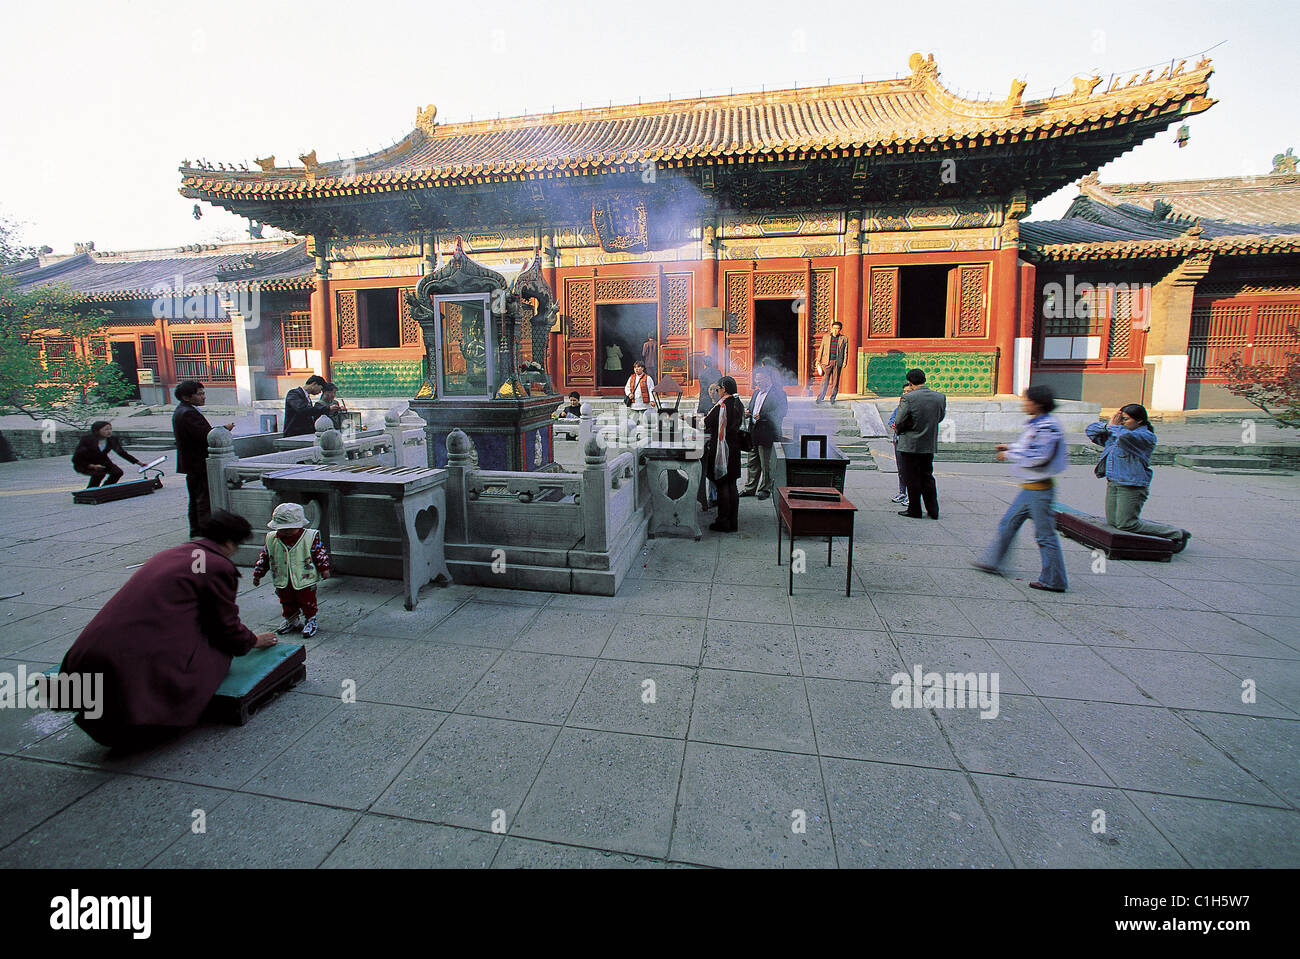 China, Beijing, Lamas templo, la arquitectura china asociados con símbolos tibetanos y temas Foto de stock